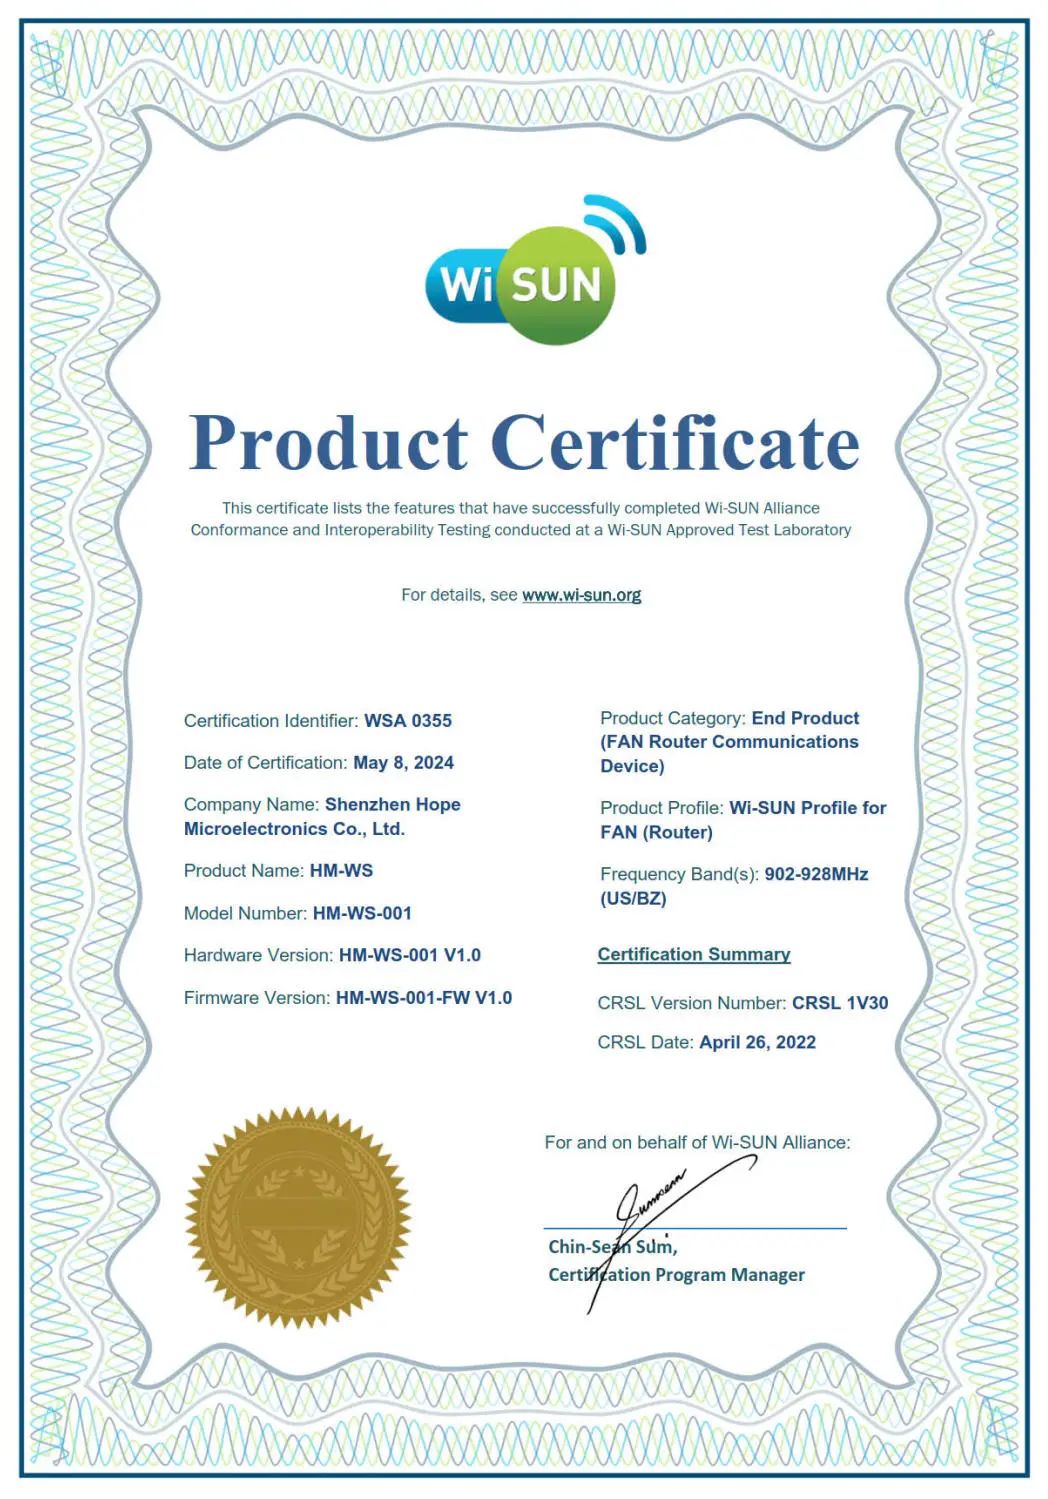 華普微HM-WS-001獲得Wi-SUN證書，提供極致性能，奠定開發基石